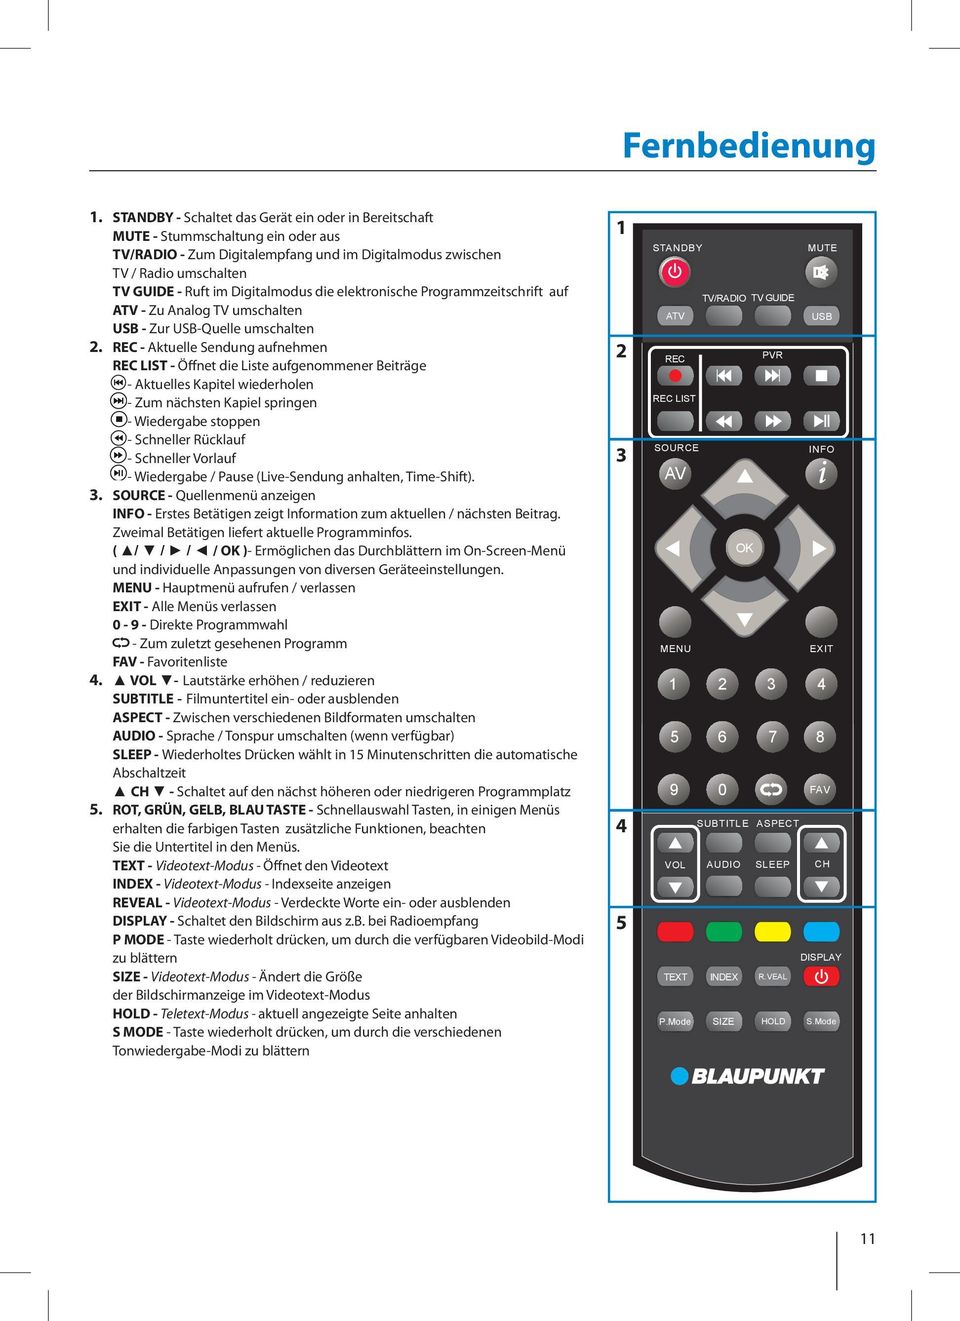 Digitalmodus die elektronische Programmzeitschrift auf ATV - Zu Analog TV umschalten USB - Zur USB-Quelle umschalten 2.